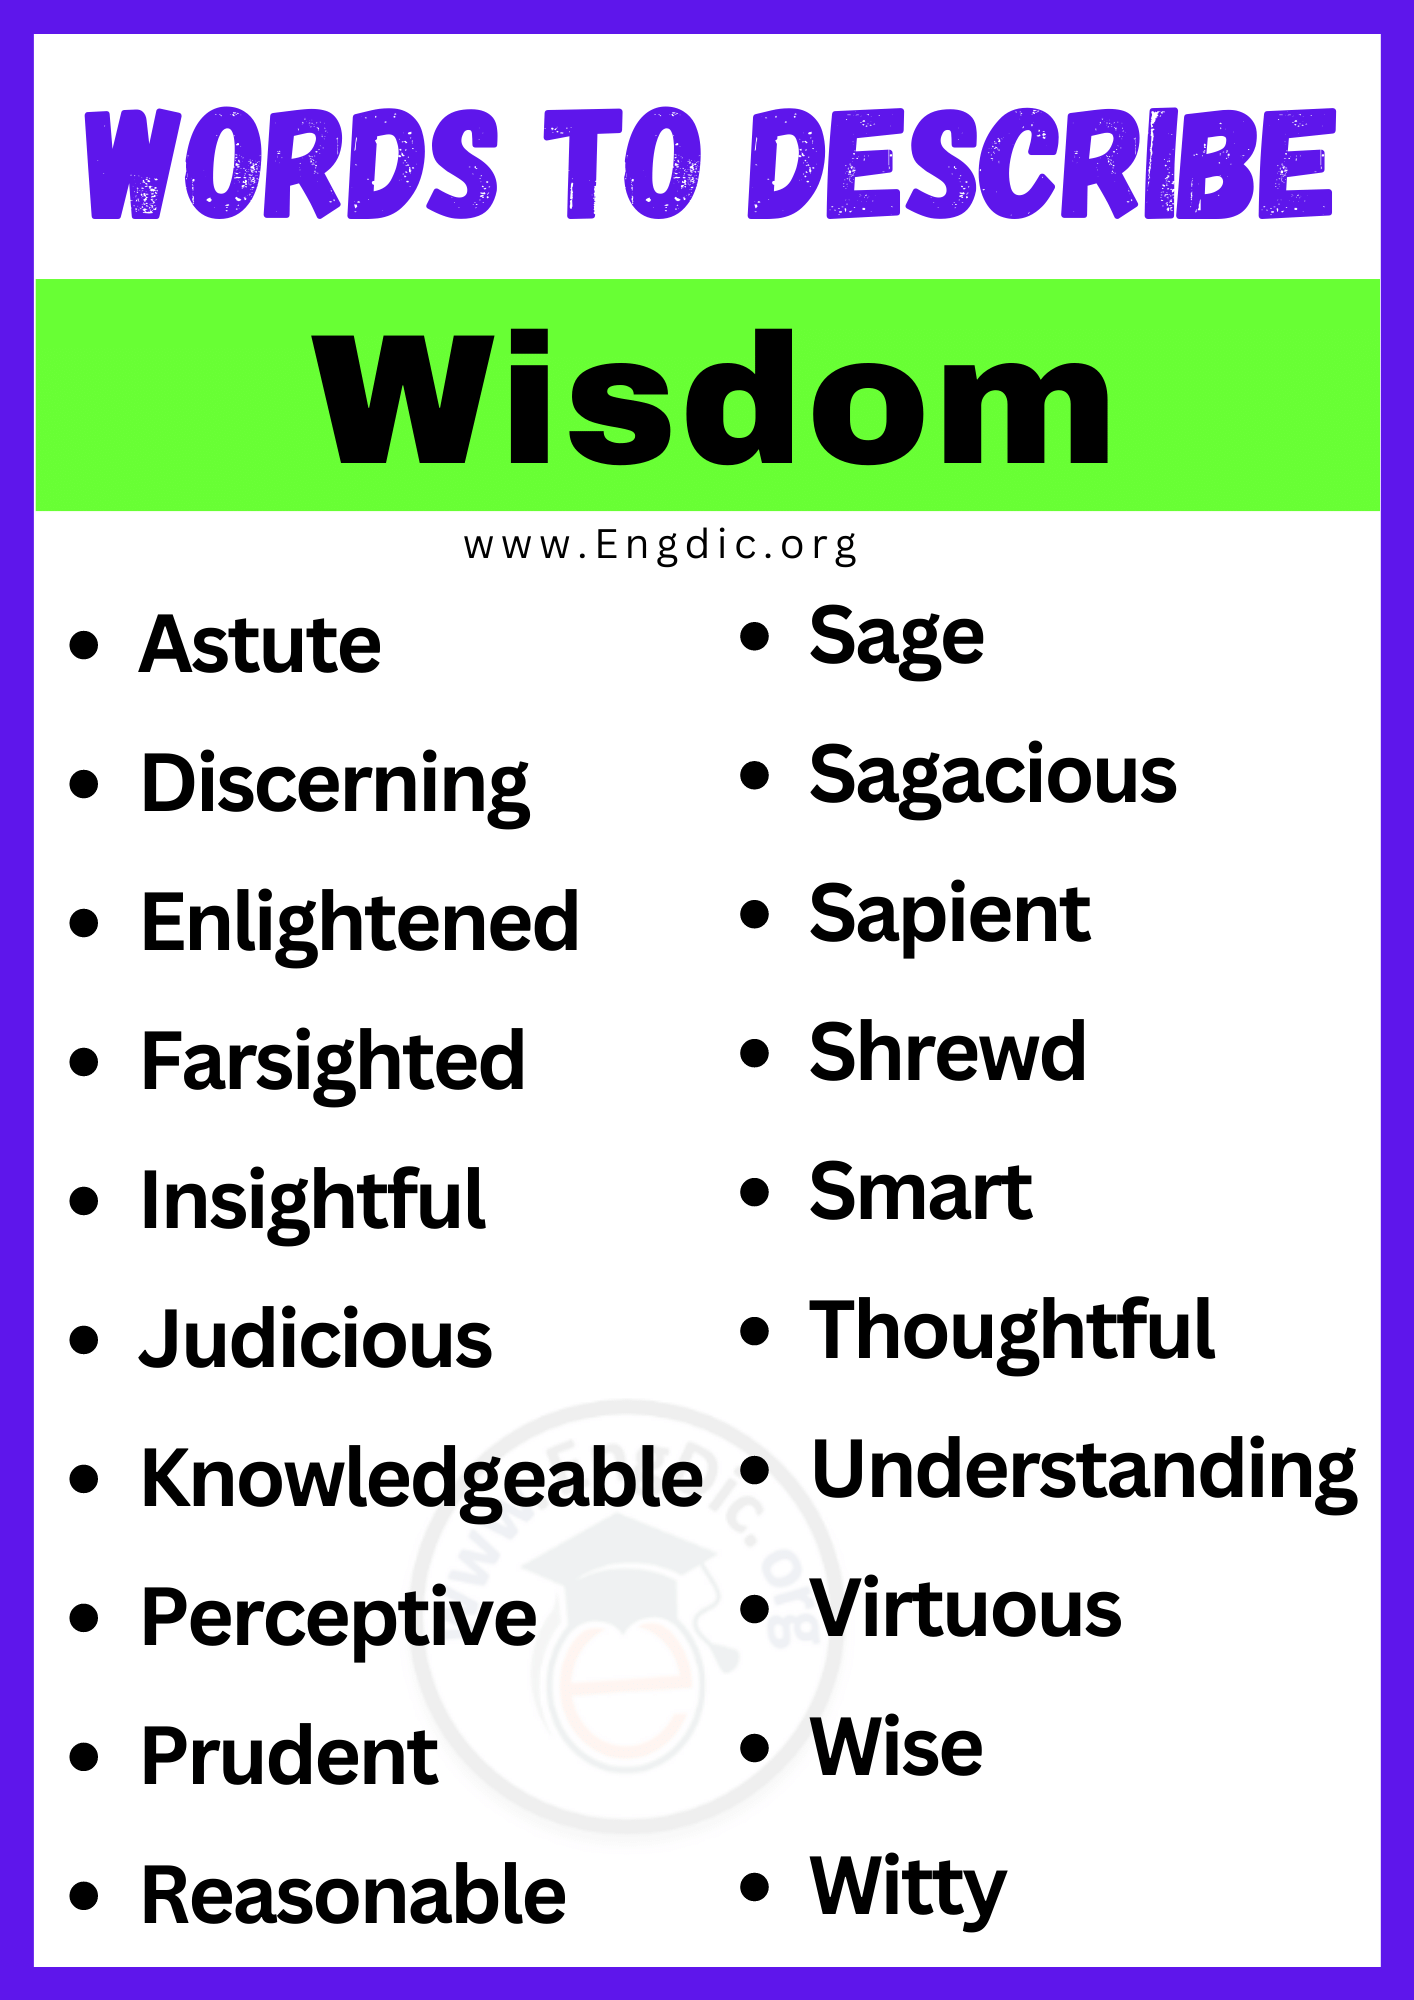 Words to Describe Wisdom